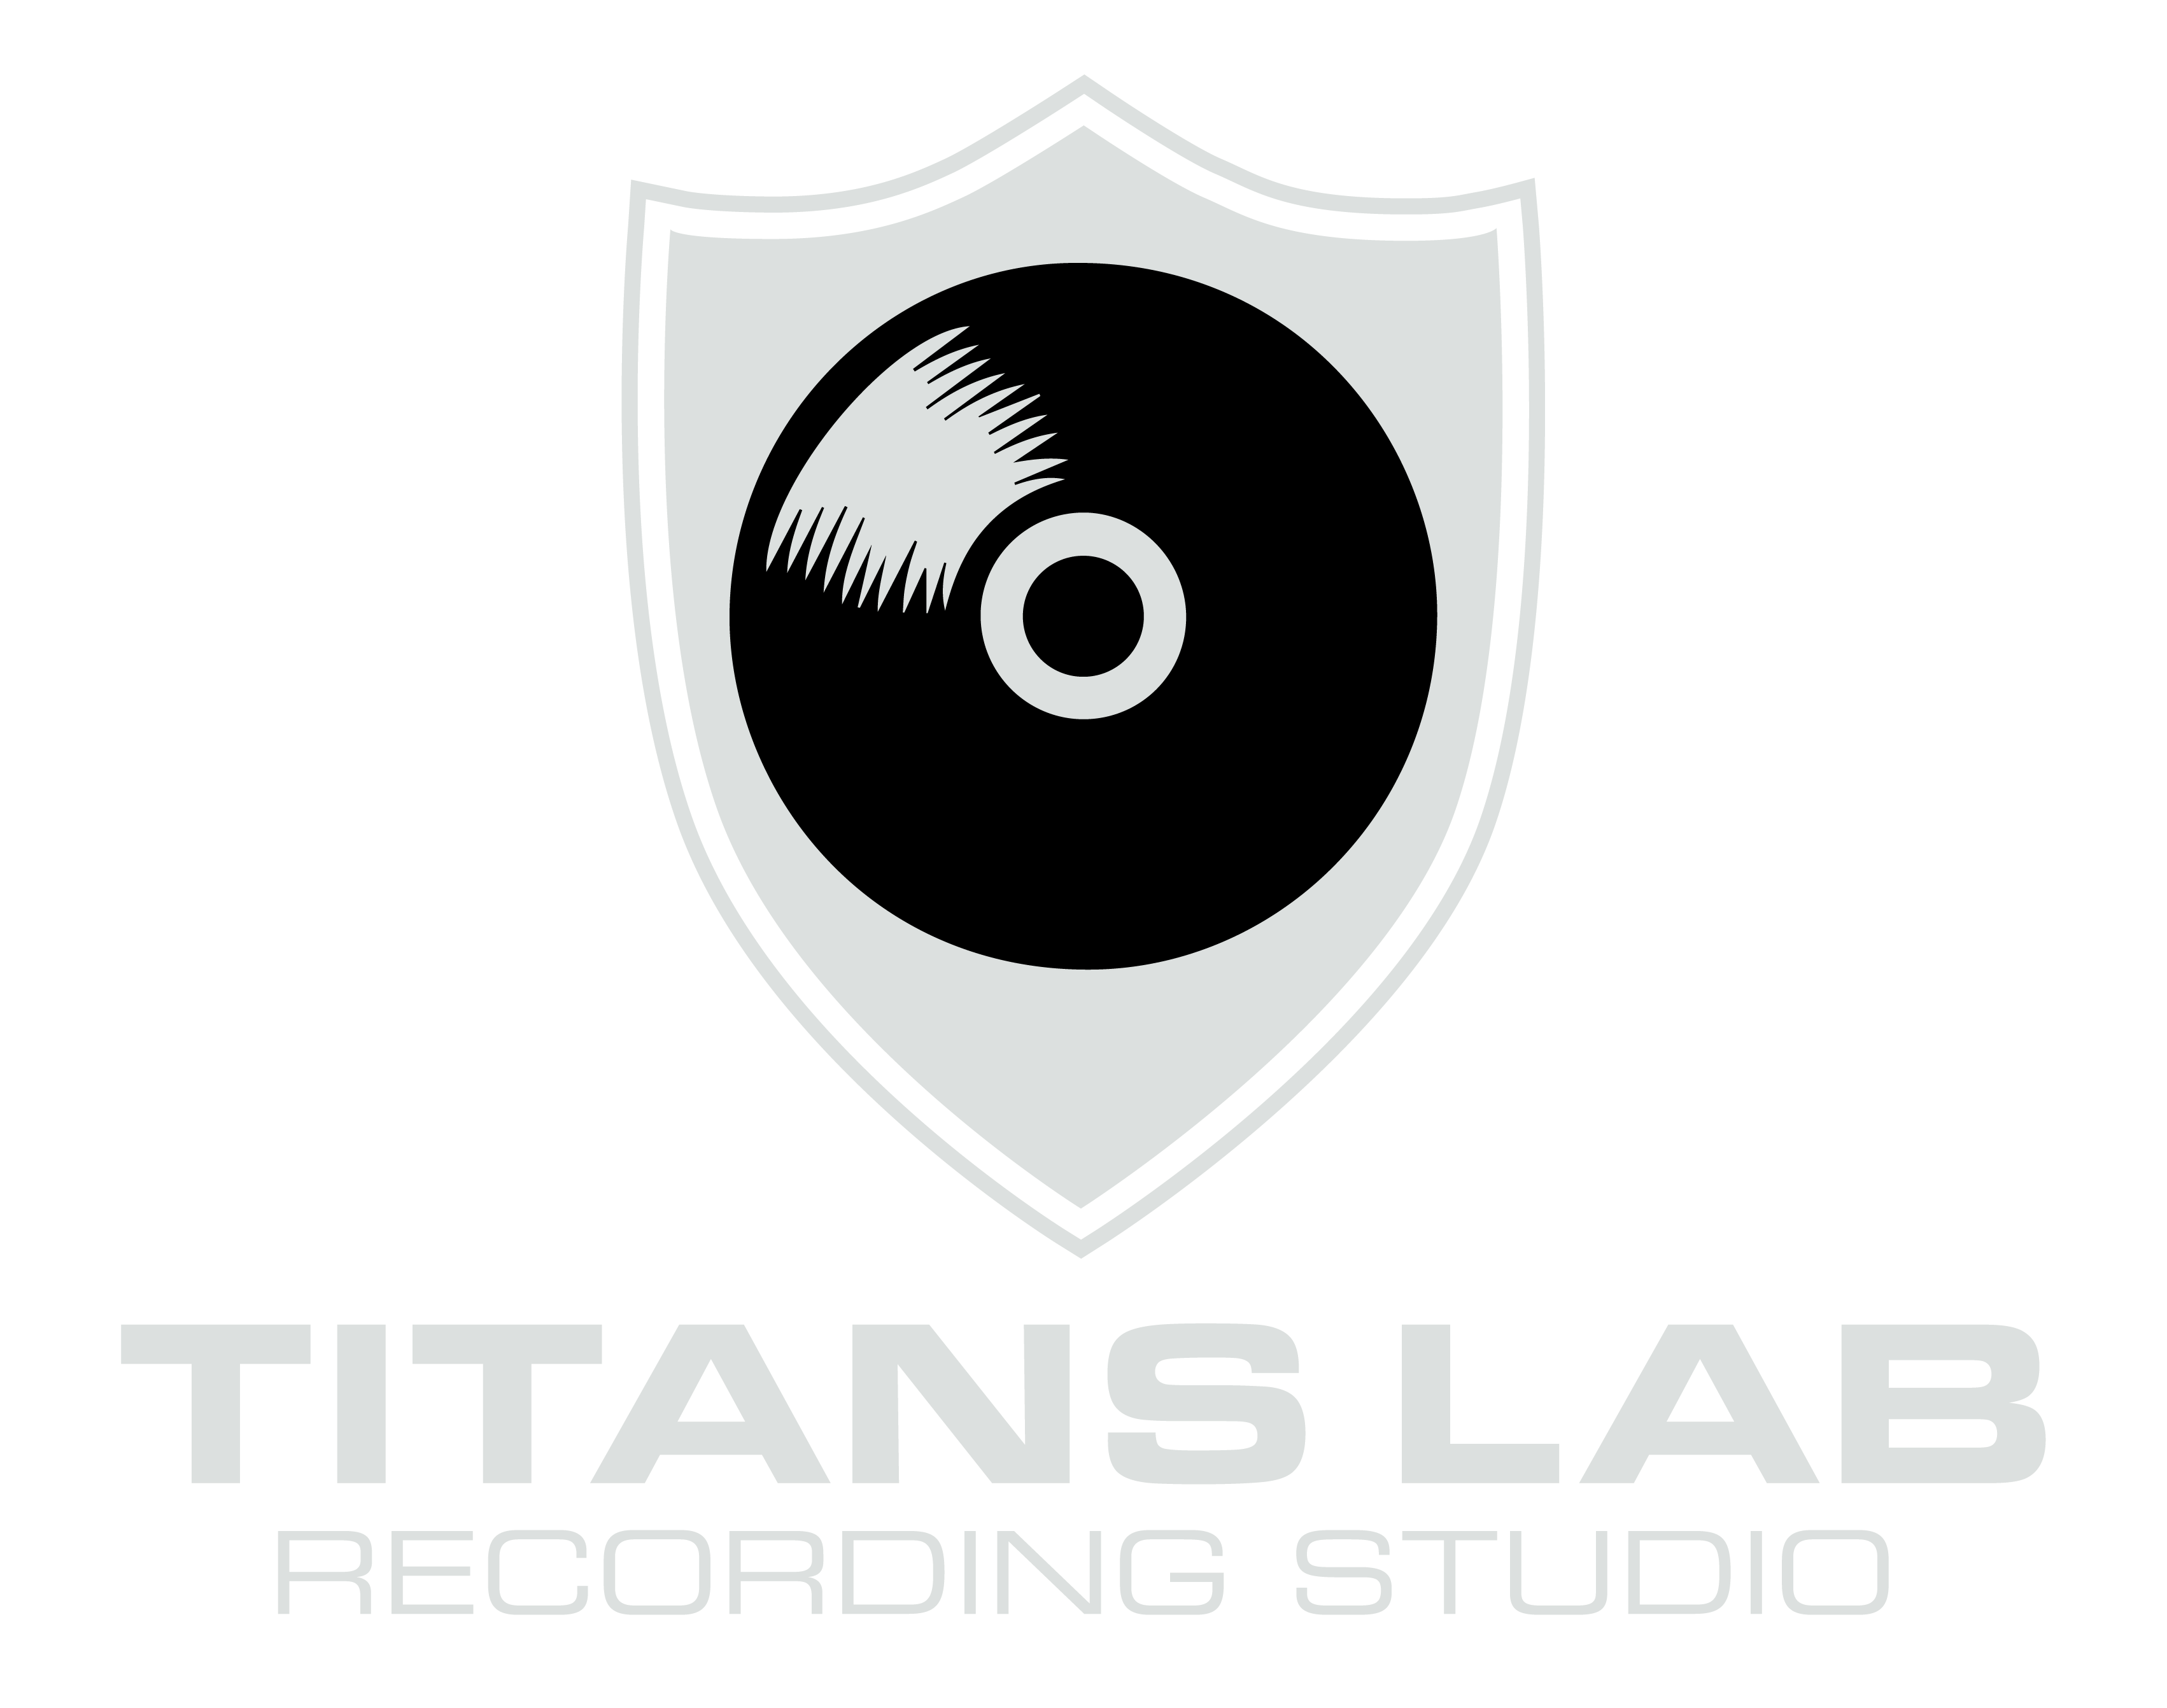 TITANS LAB Recording Studio